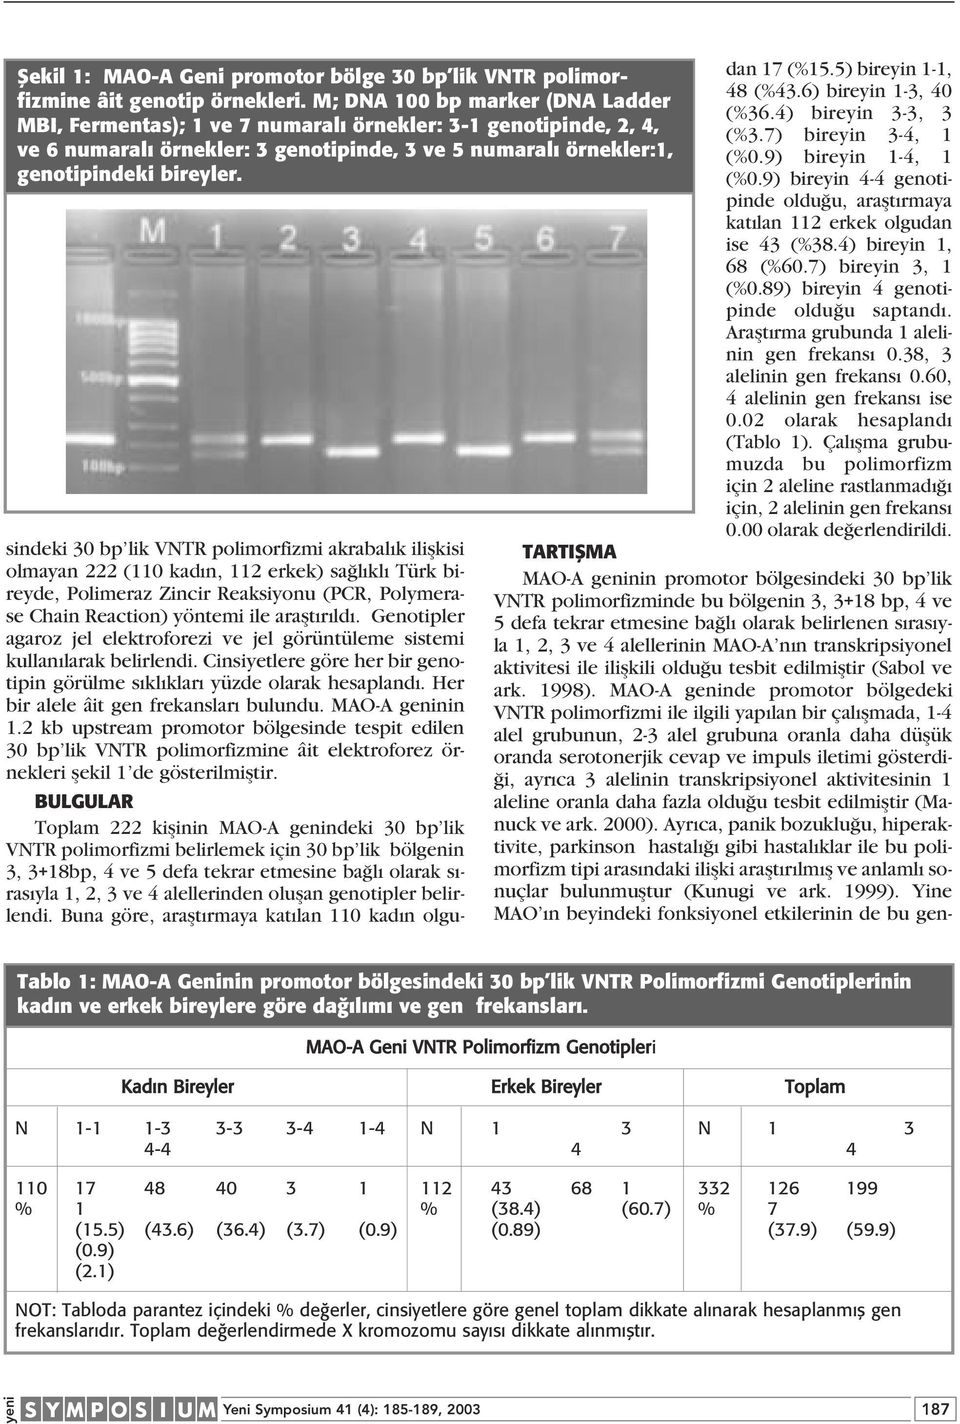 sindeki 30 lik VNTR polimorfizmi akrabal k iliflkisi olmayan 222 (110 kad n, 112 erkek) sa l kl Türk bireyde, Polimeraz Zincir Reaksiyonu (PCR, Polymerase Chain Reaction) yöntemi ile araflt r ld.